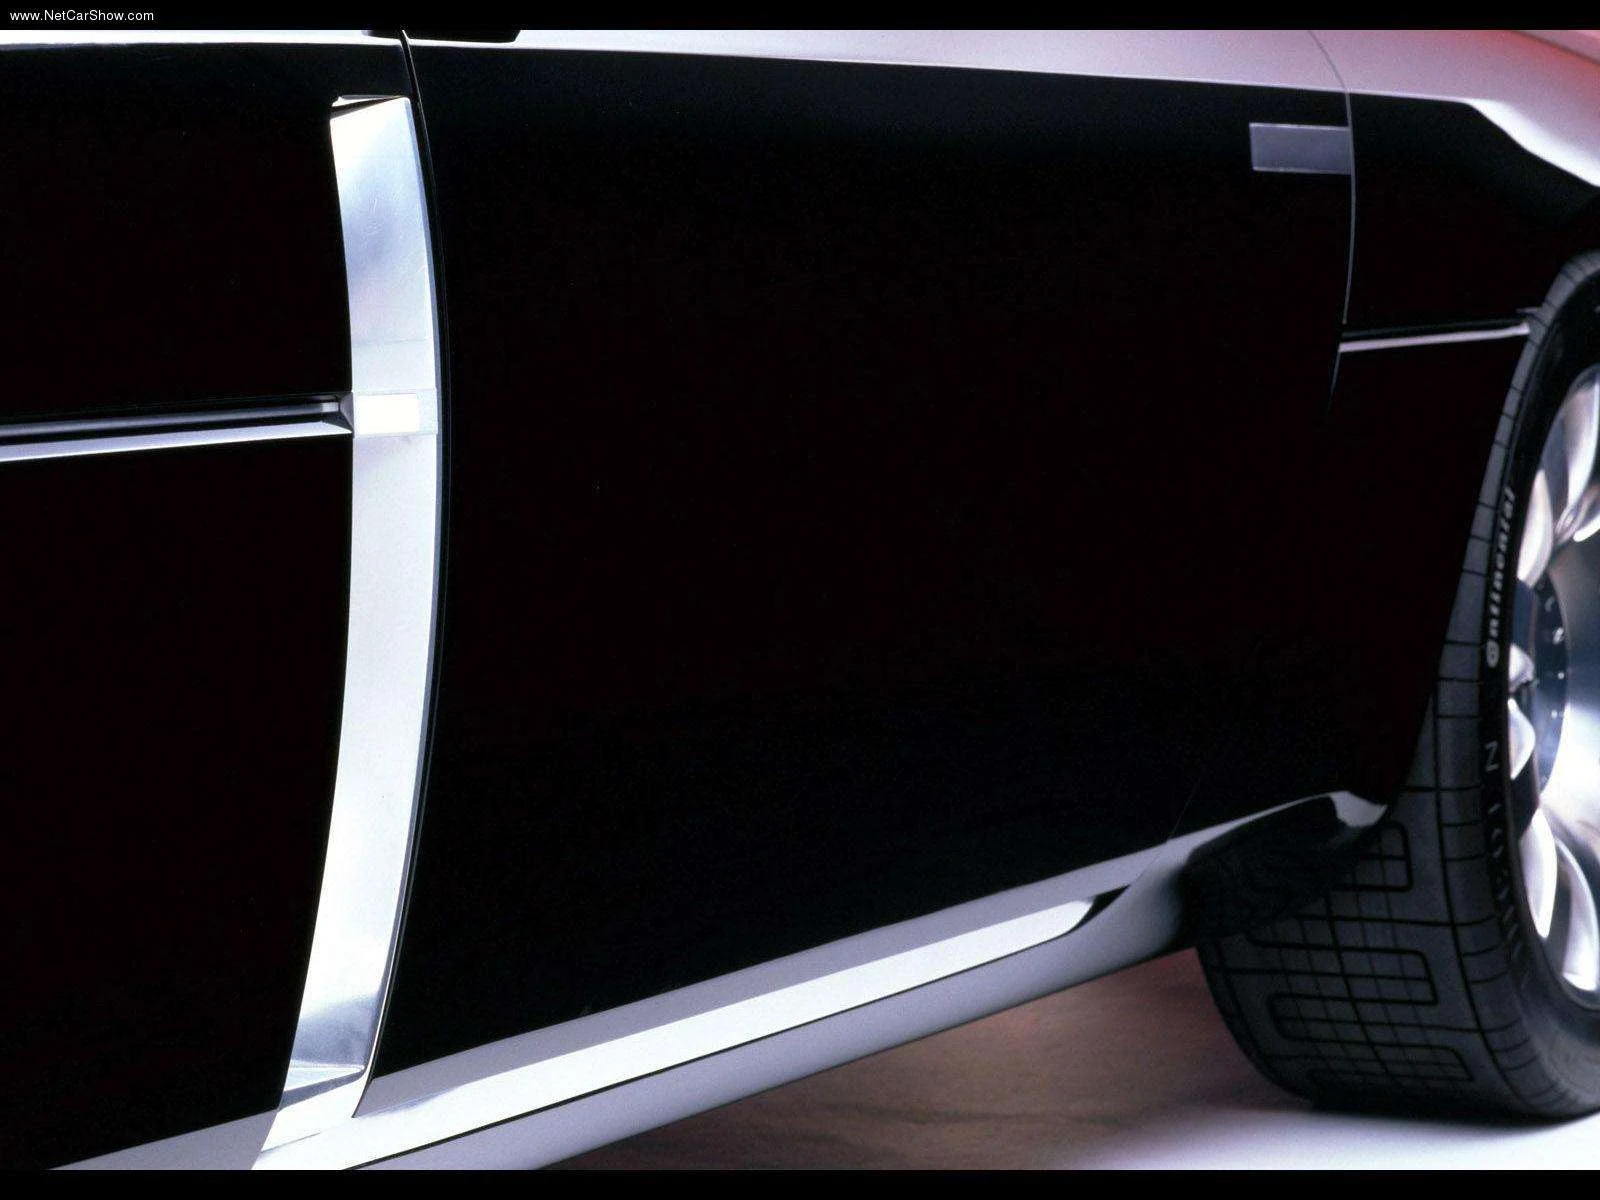 Hình ảnh xe ô tô Lincoln MK9 Concept 2001 & nội ngoại thất